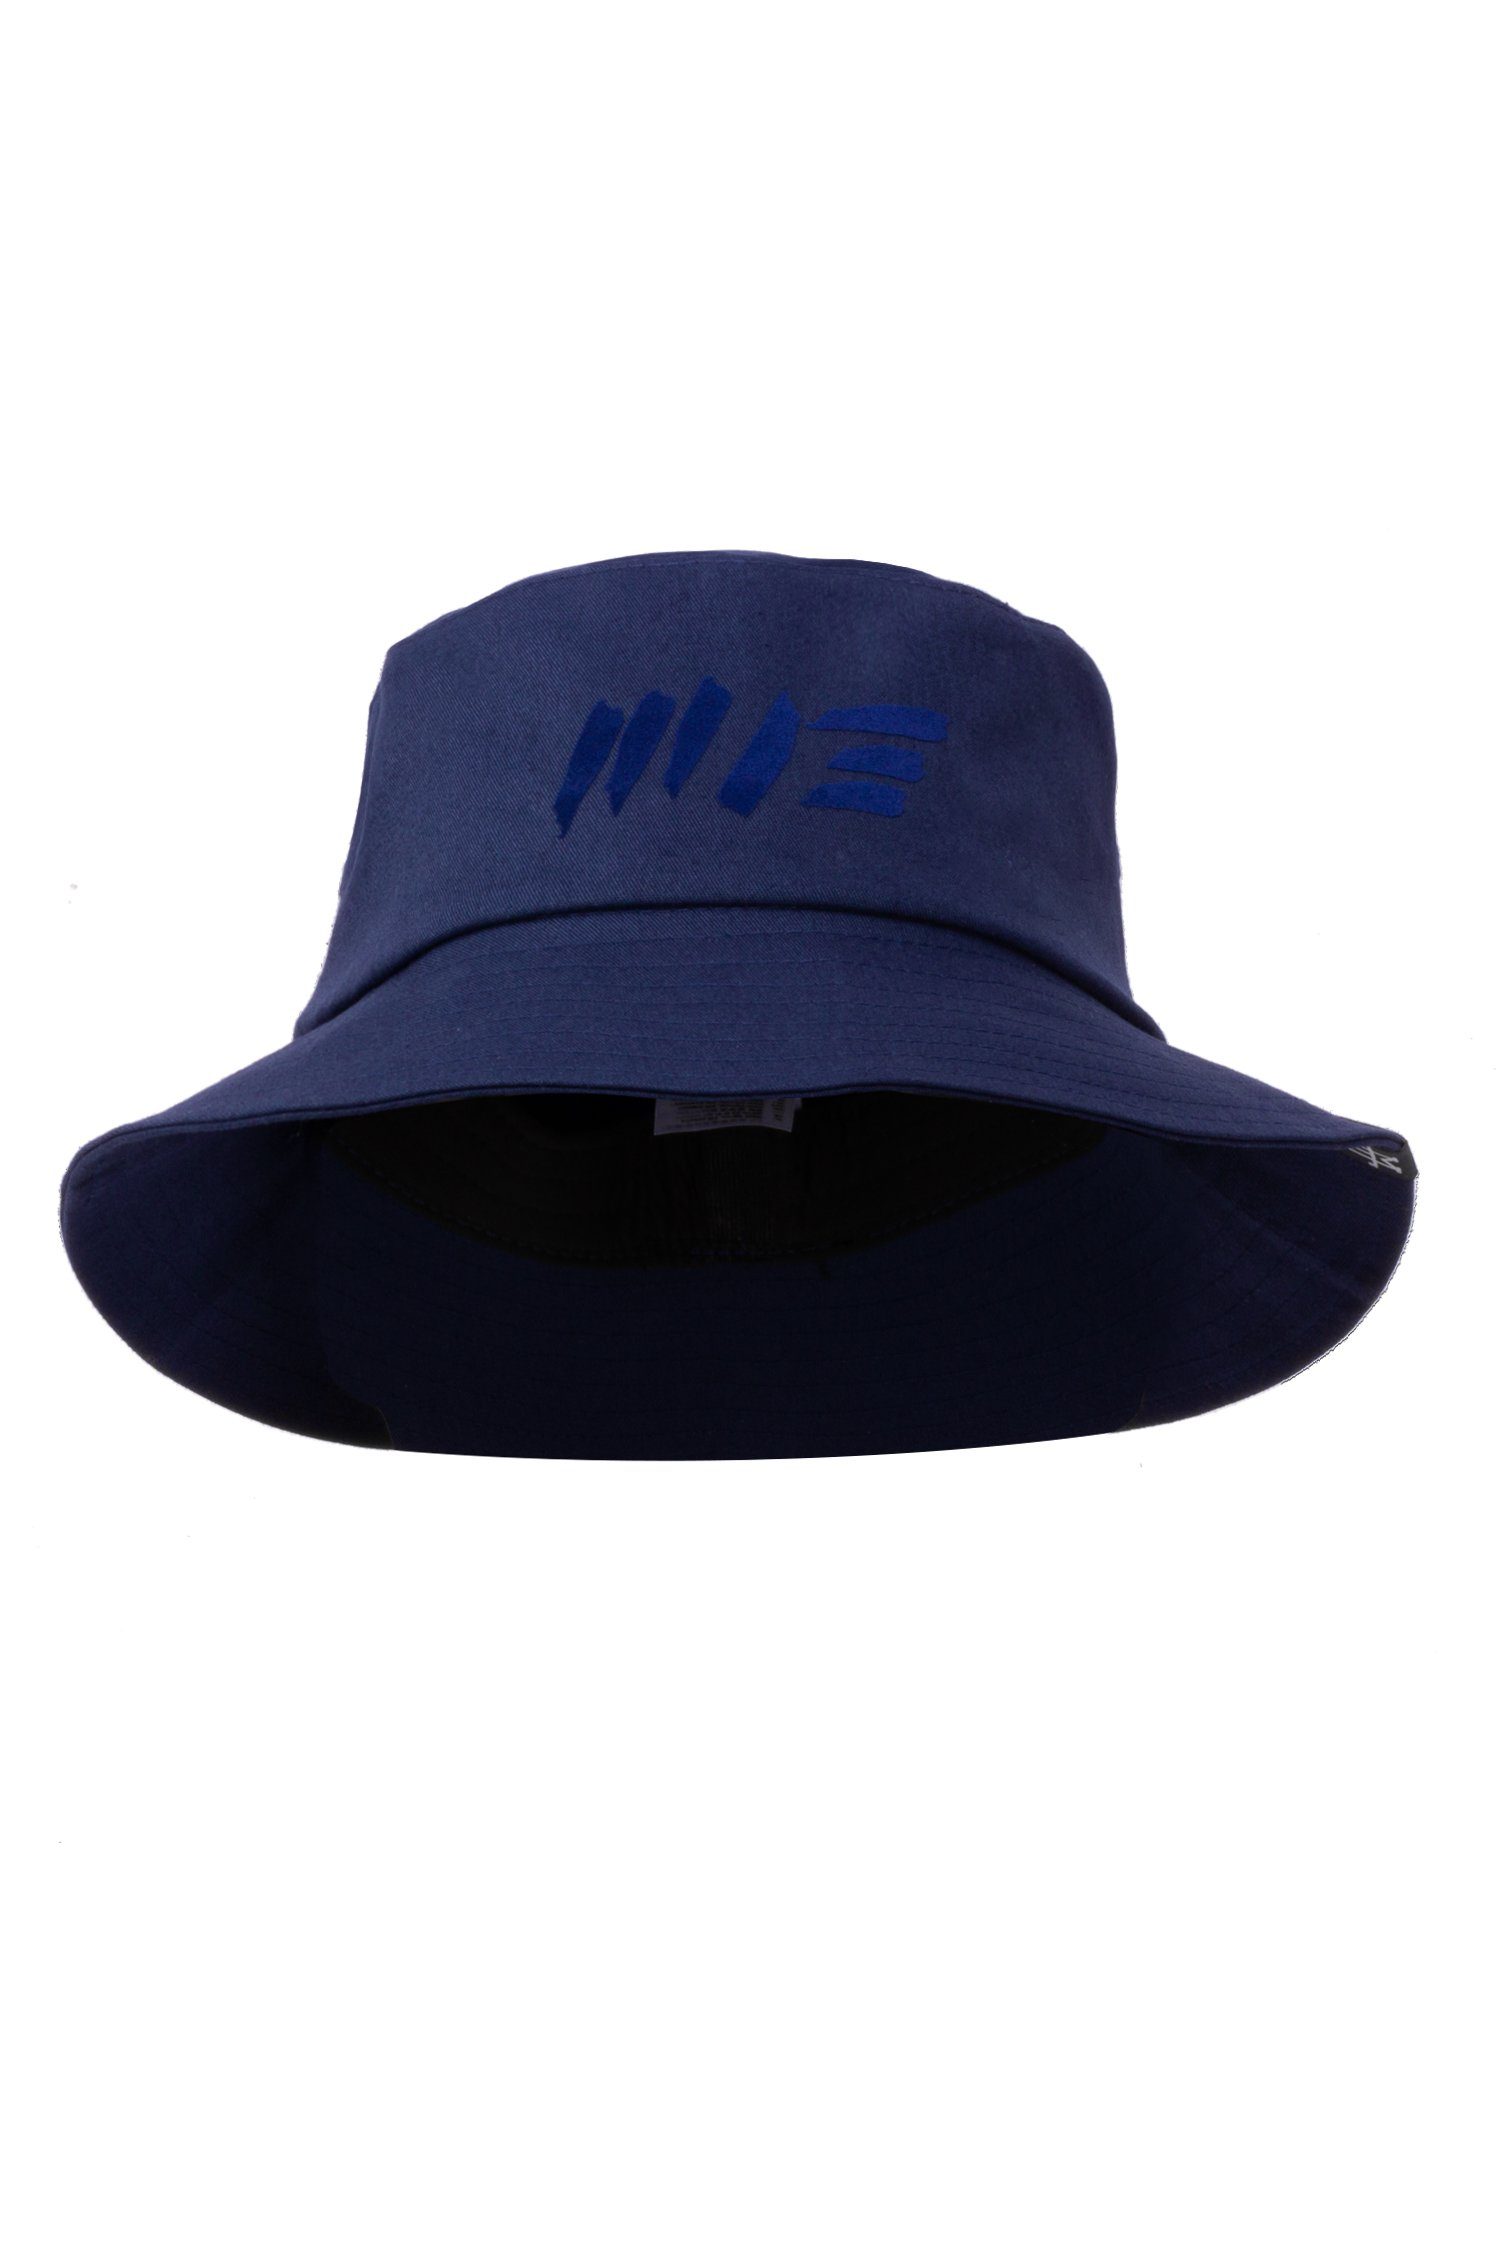 Anglerhut, M13 Hat Fischerhut Hat, Manufaktur13 Bucket Navy 100% - Fischermütze Vegan Session